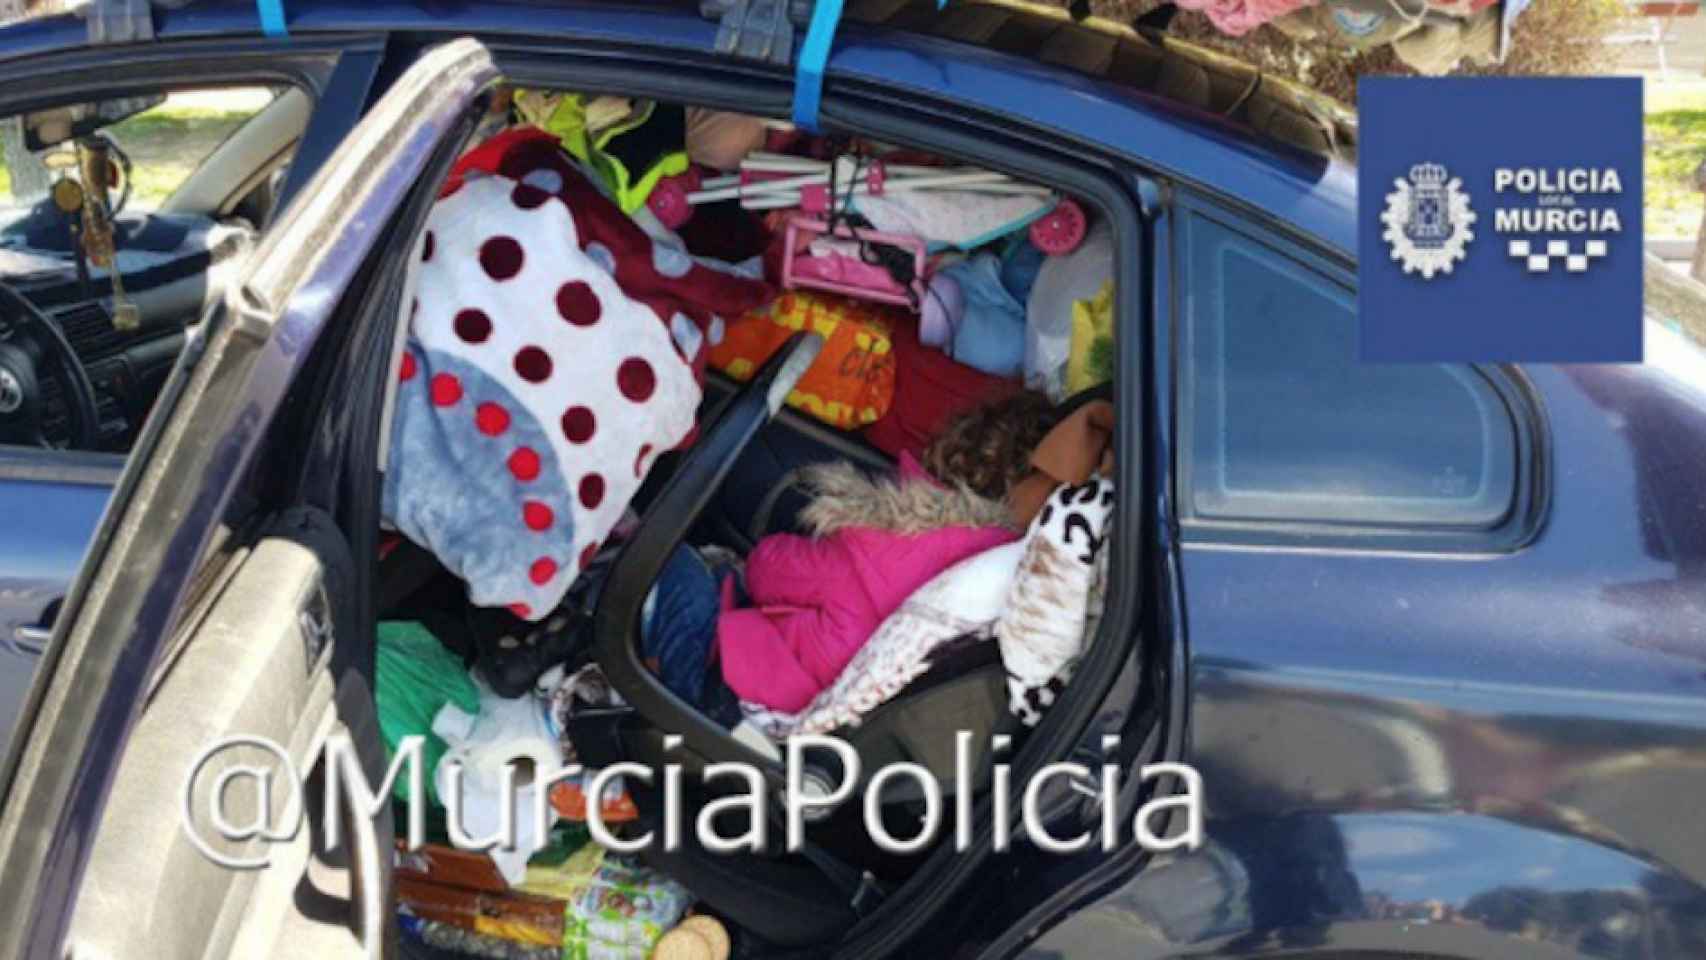 La foto de la niña atrapada entre objetos dentro del vehículo / Twitter